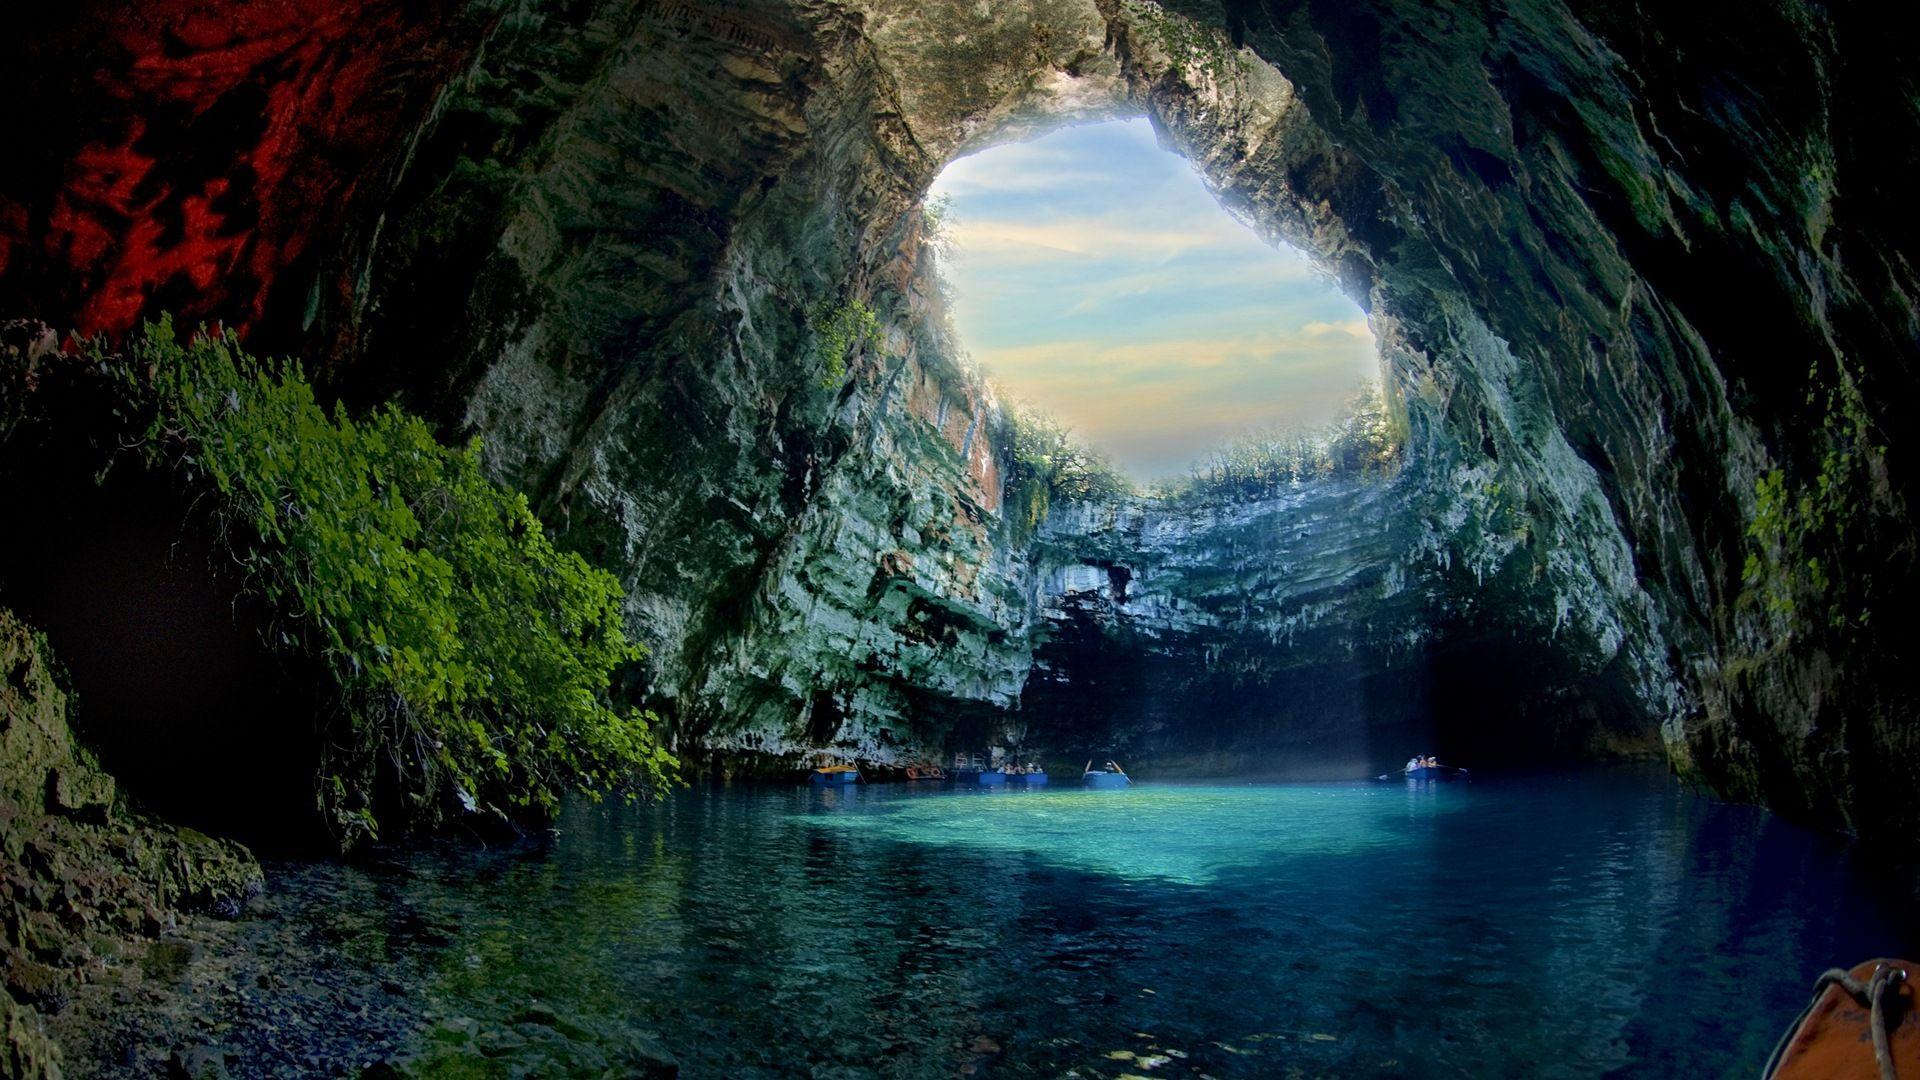 Cave Desktop Wallpapers - Top Free Cave Desktop Backgrounds